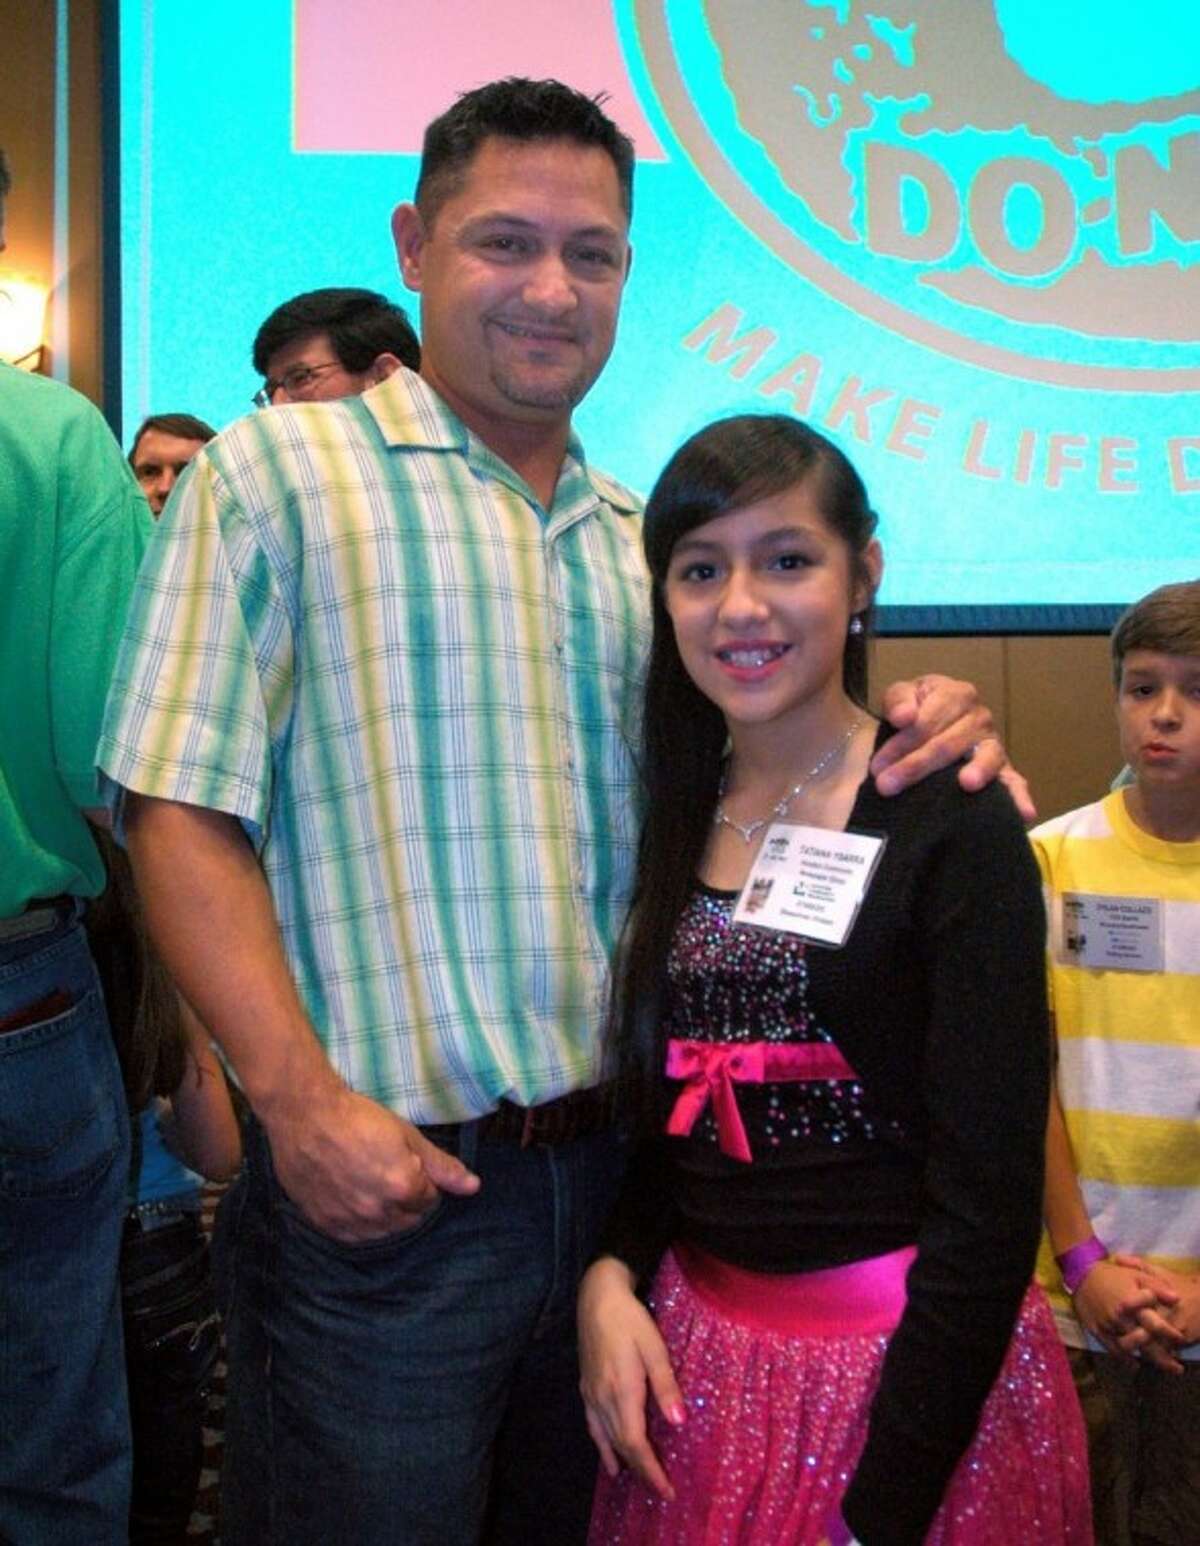 Joey Ybarra and daughter Tatiana waiting to receive HCN’s $50,000 scholarship award.